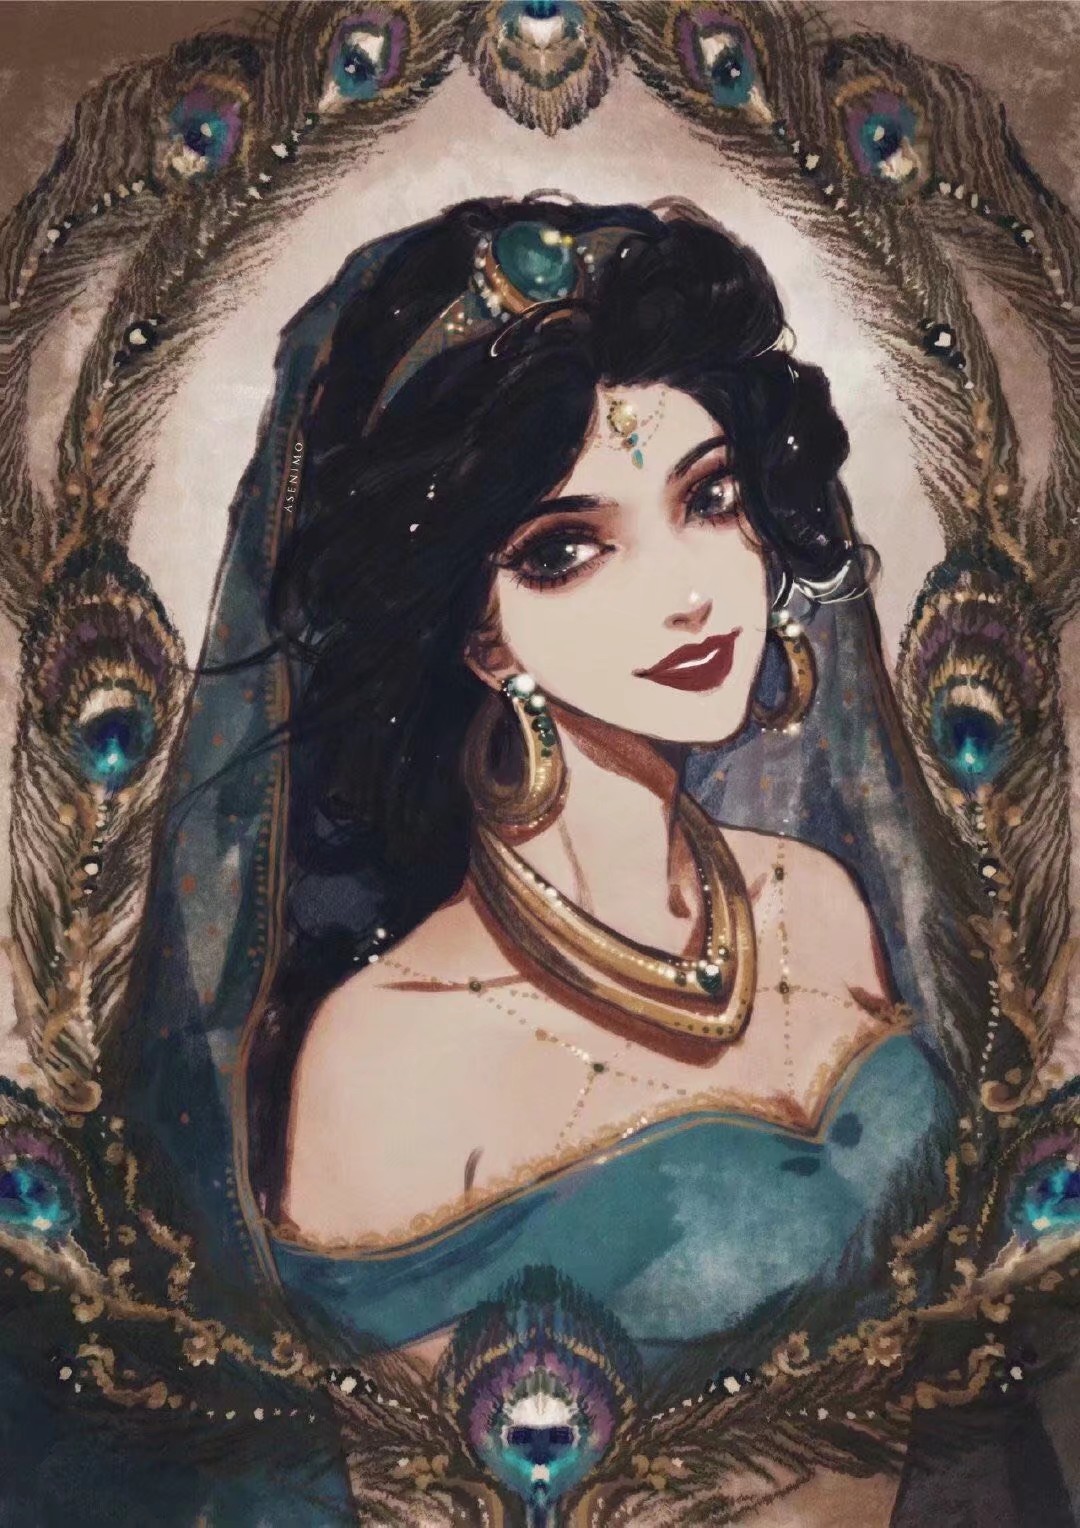 迪士尼公主插画头像阿拉丁-茉莉 - 堆糖,美图壁纸兴趣